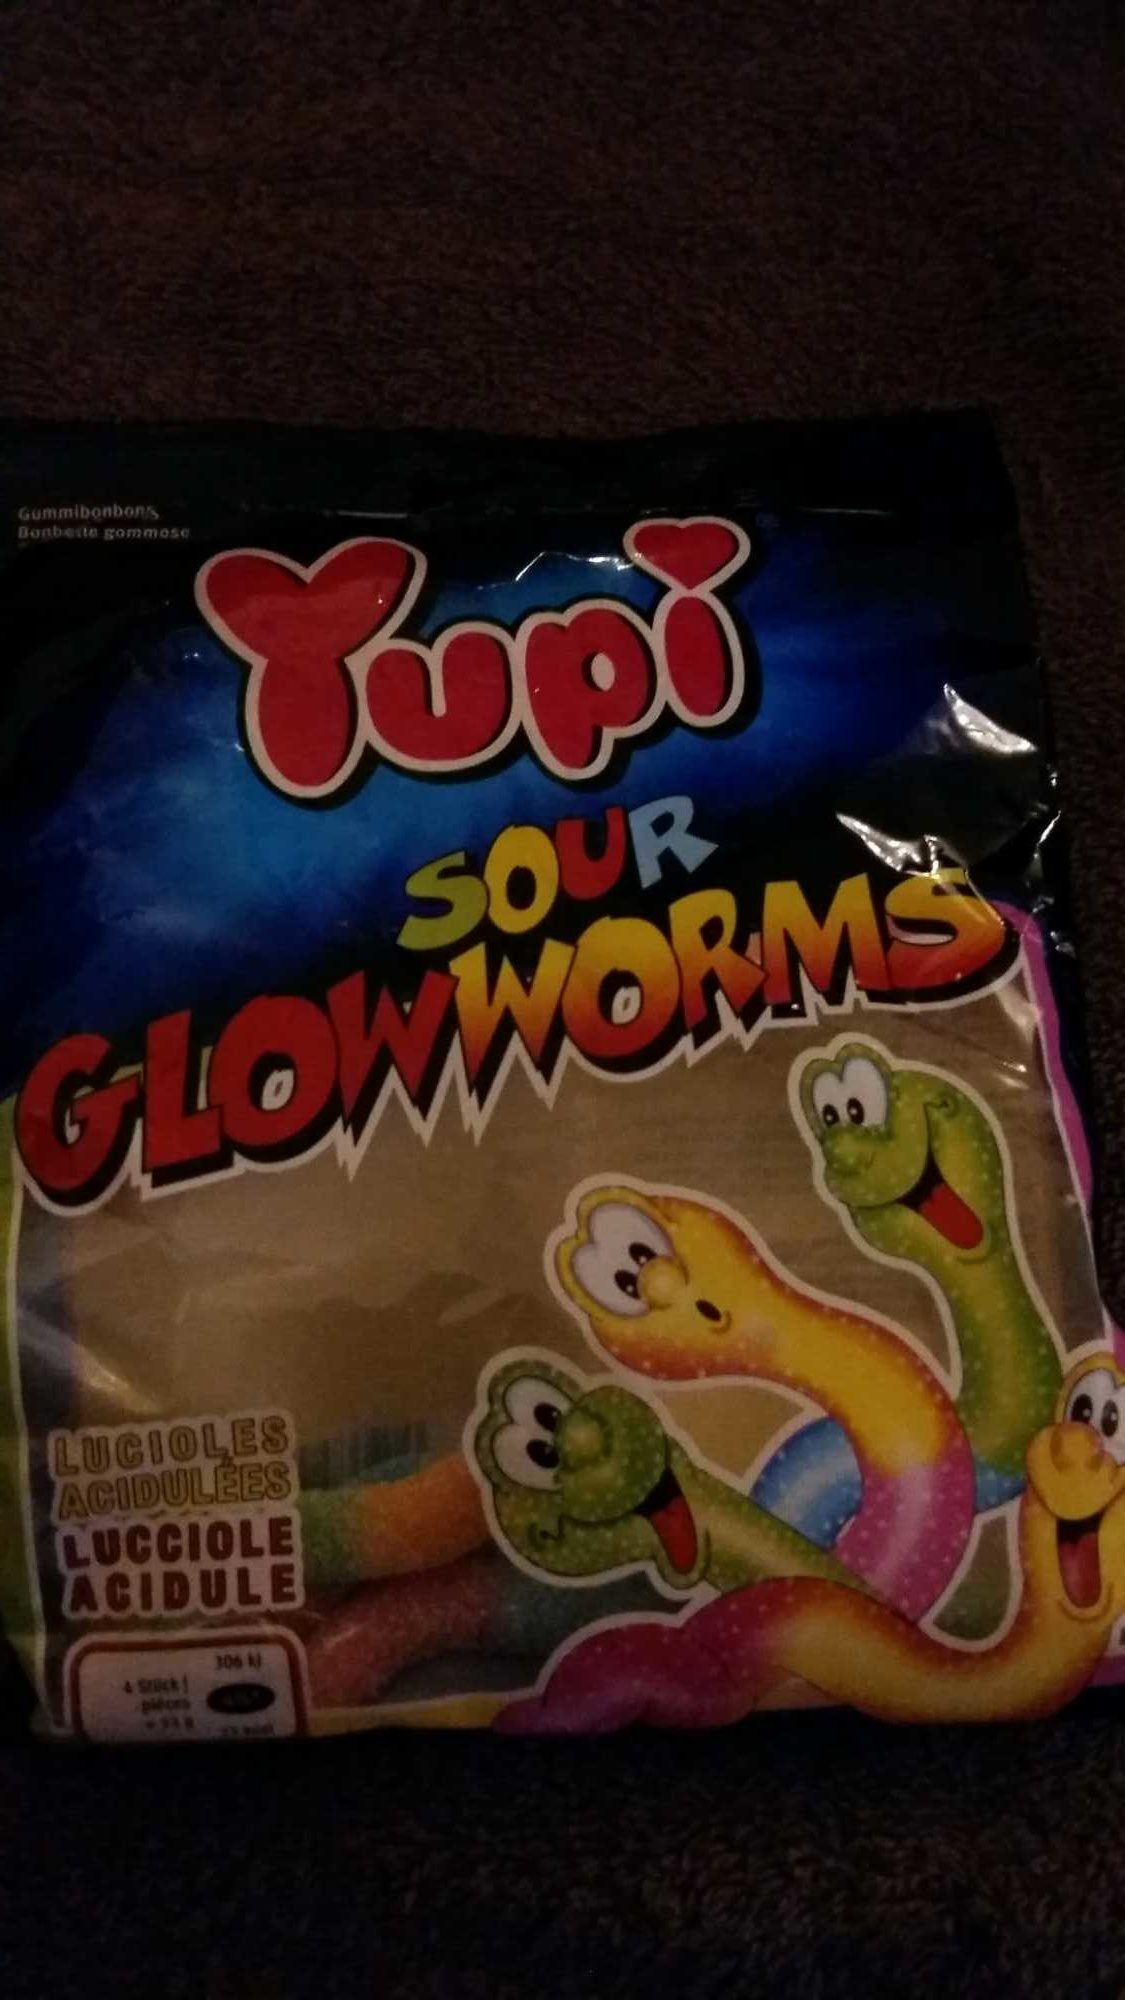 Sour Glowworms - Prodotto - fr